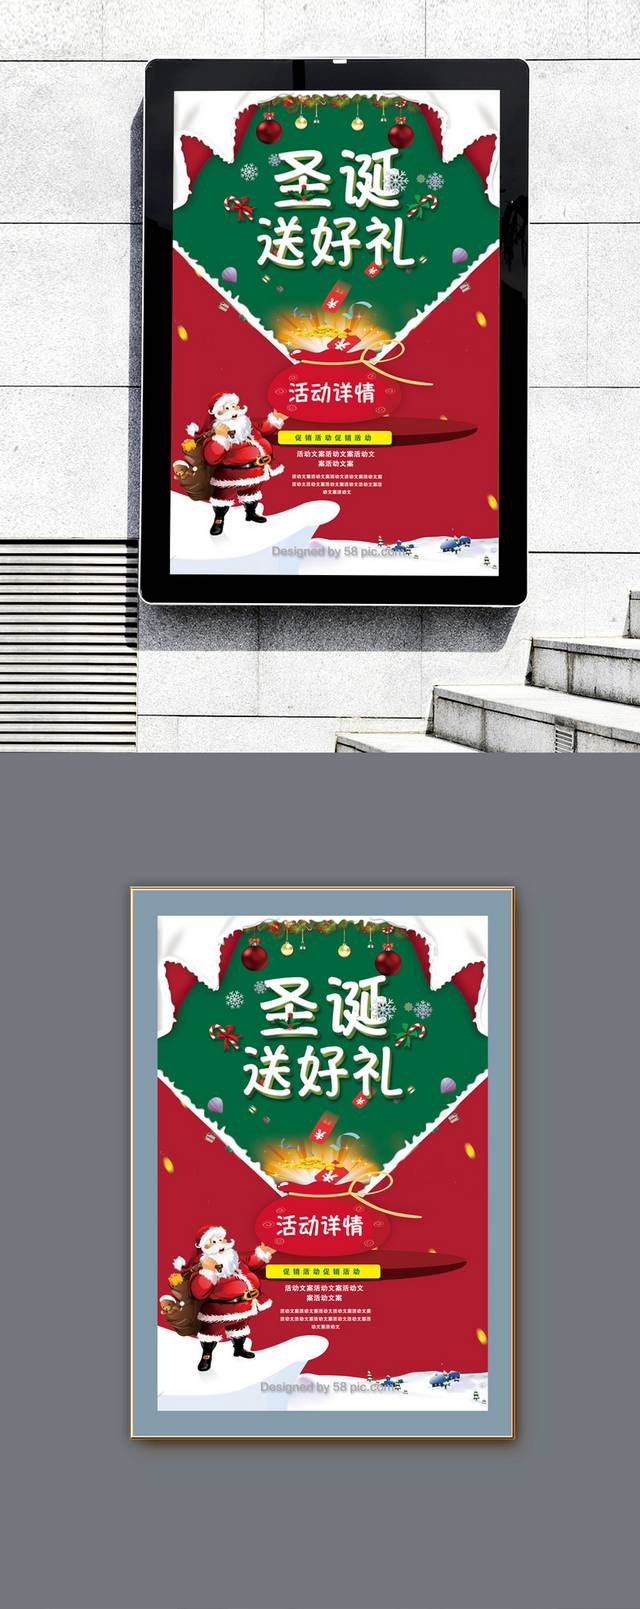 清新圣诞节海报设计模板下载